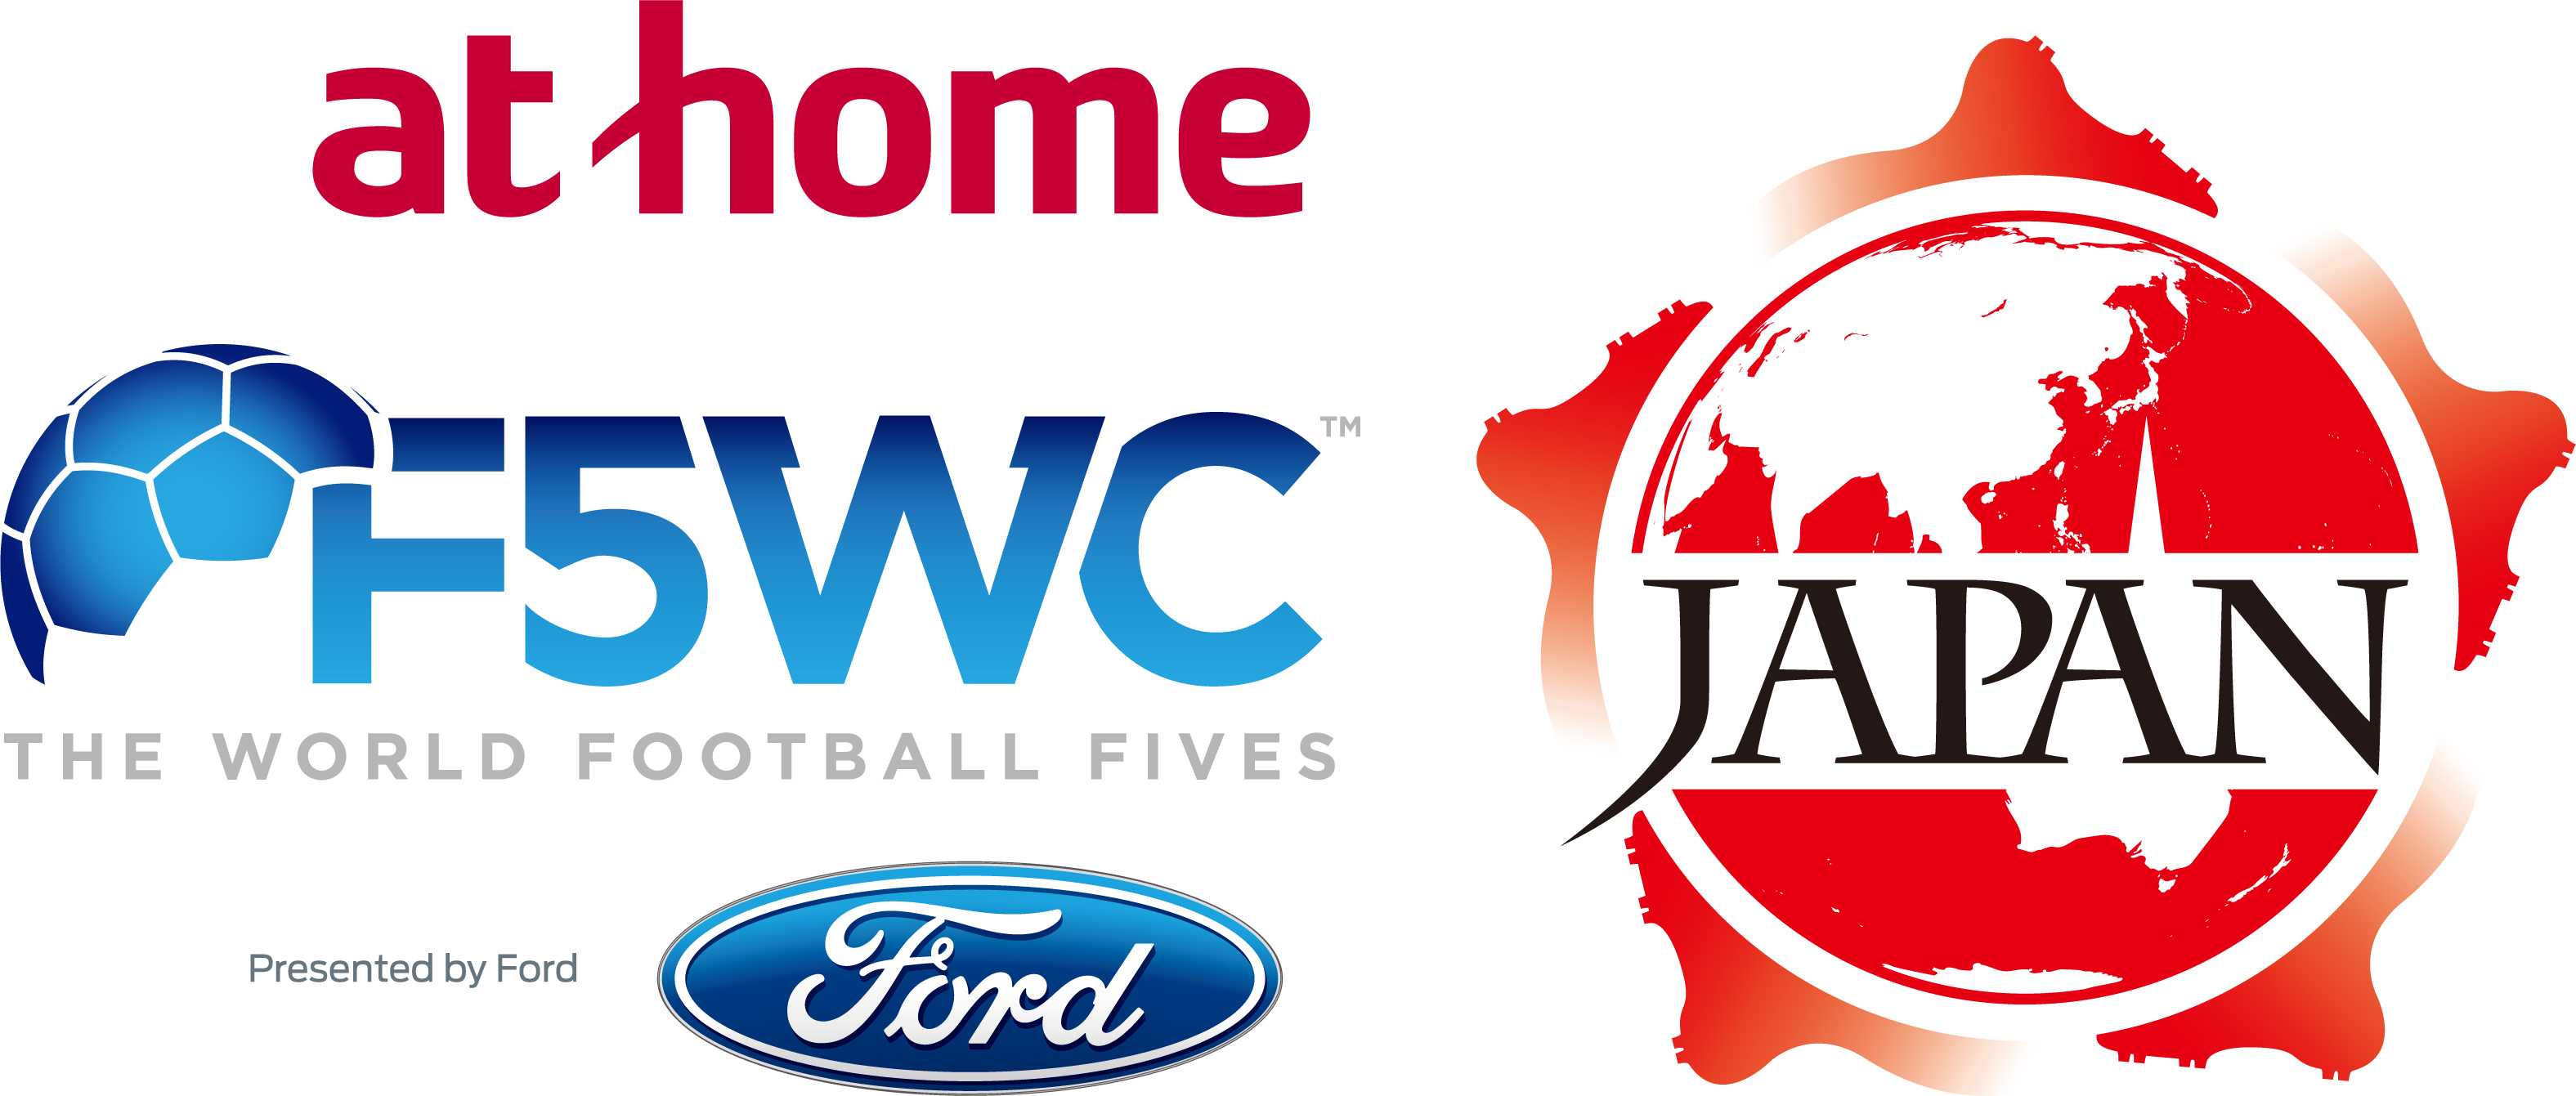 アマチュアサッカー世界大会 F5wc アットホームがスポンサーに名乗り 決勝参加チームは無料に